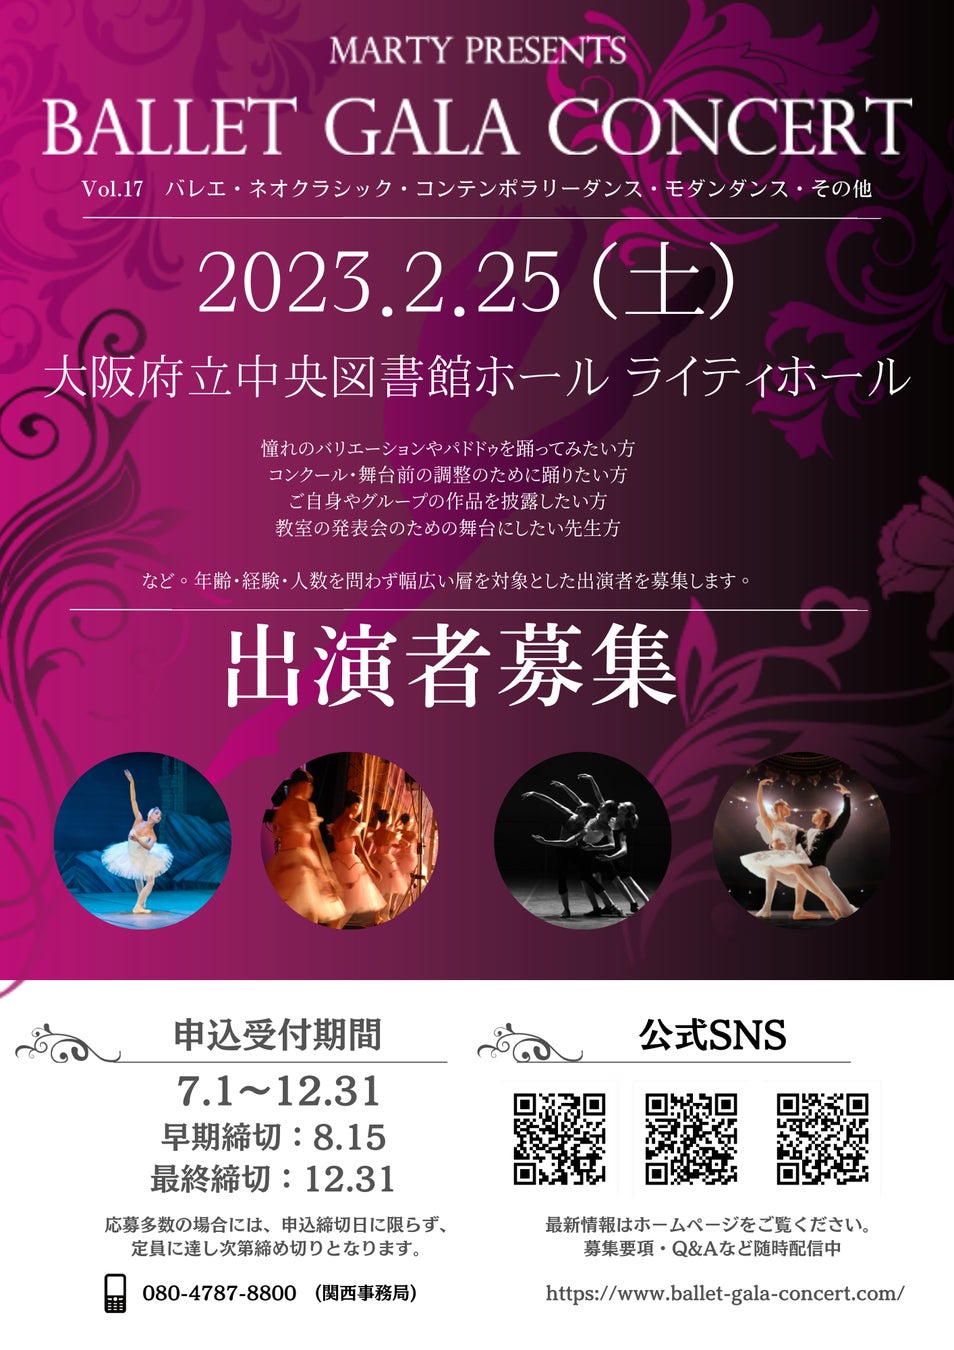 【募集開始】みんなのバレエガラコンサートin大阪 出演申込開始！2023年2月25日(土)大阪府立中央図書館ホール/ライティホールにて開催のサブ画像1